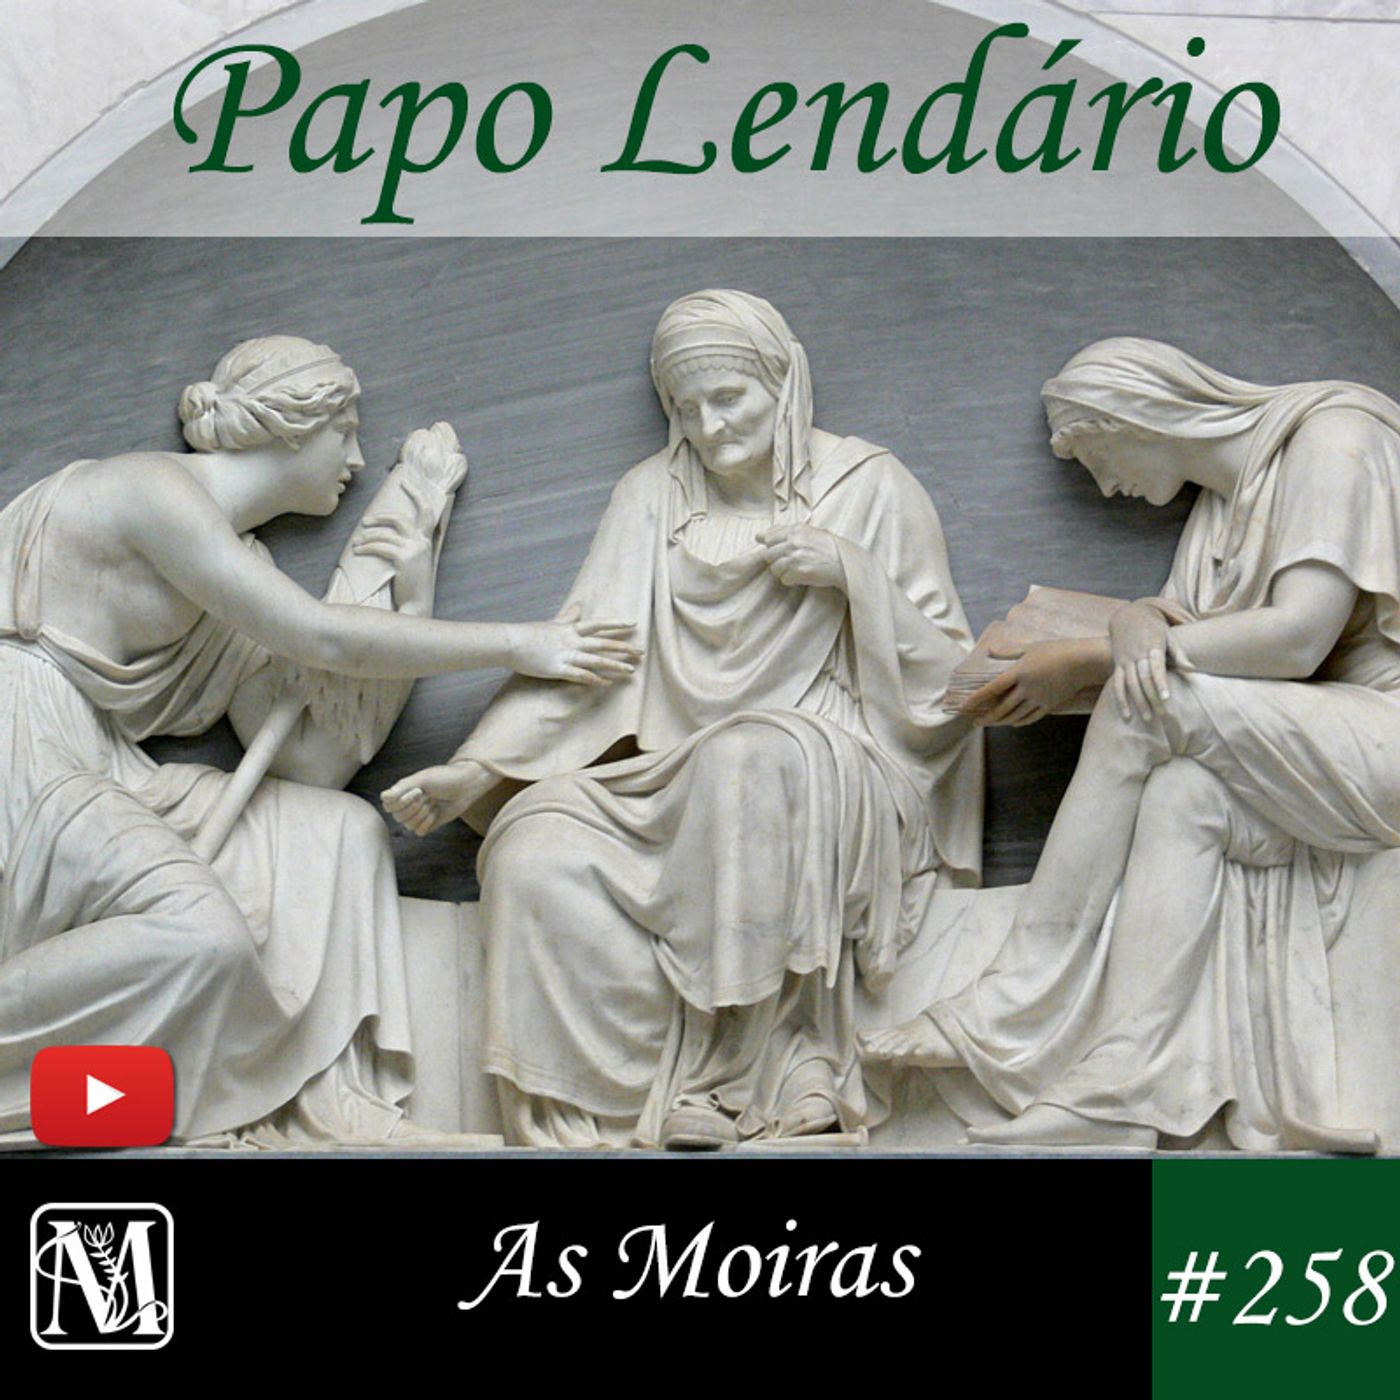 Papo Lendário #258 - As Moiras